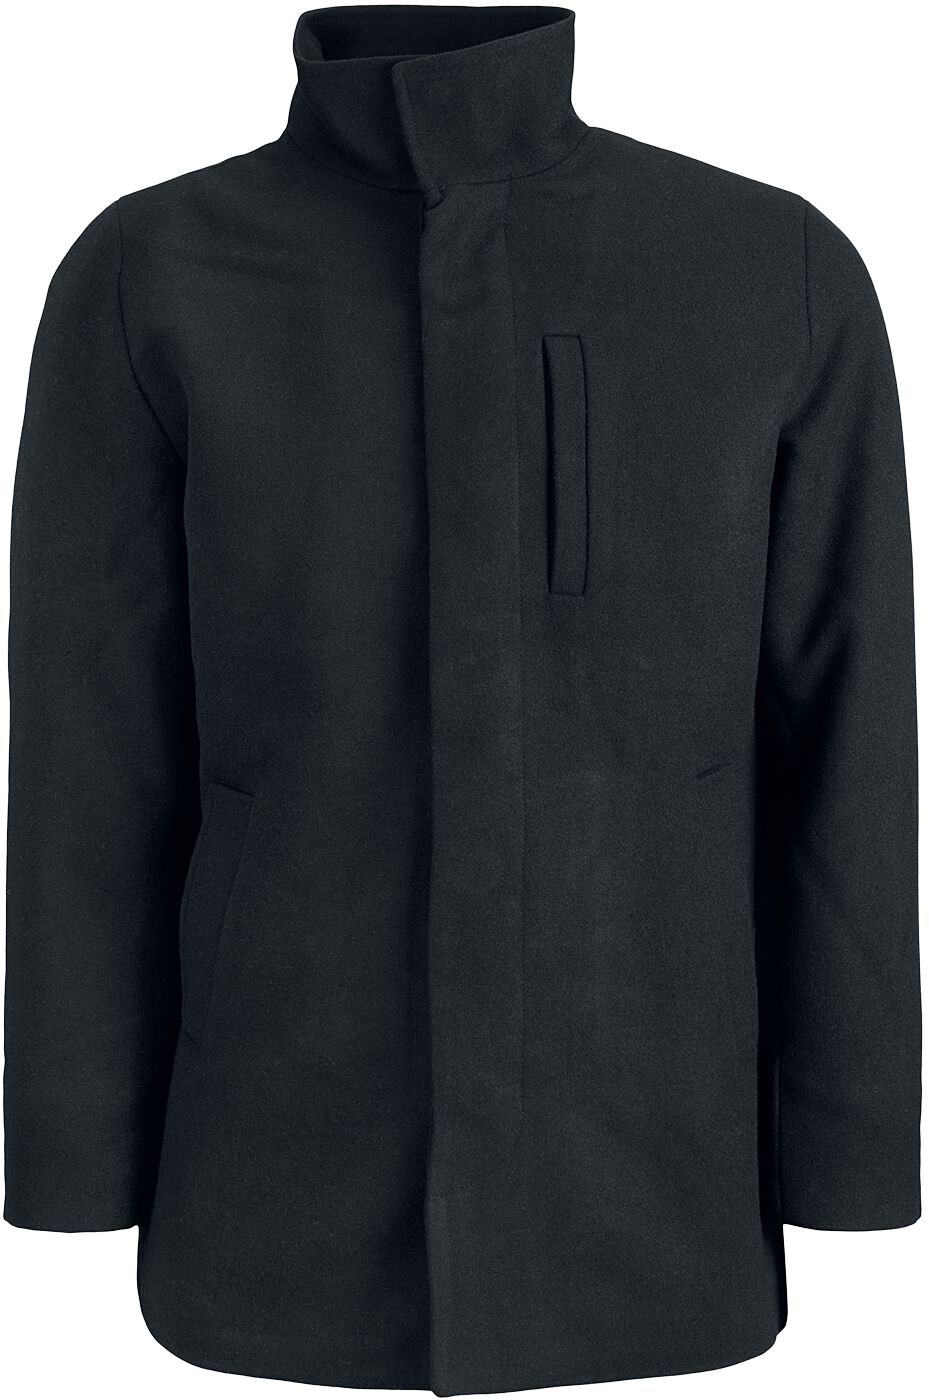 Jack & Jones Winterjacke - Dunham Wool Jacket - S bis XL - für Männer - Größe M - schwarz